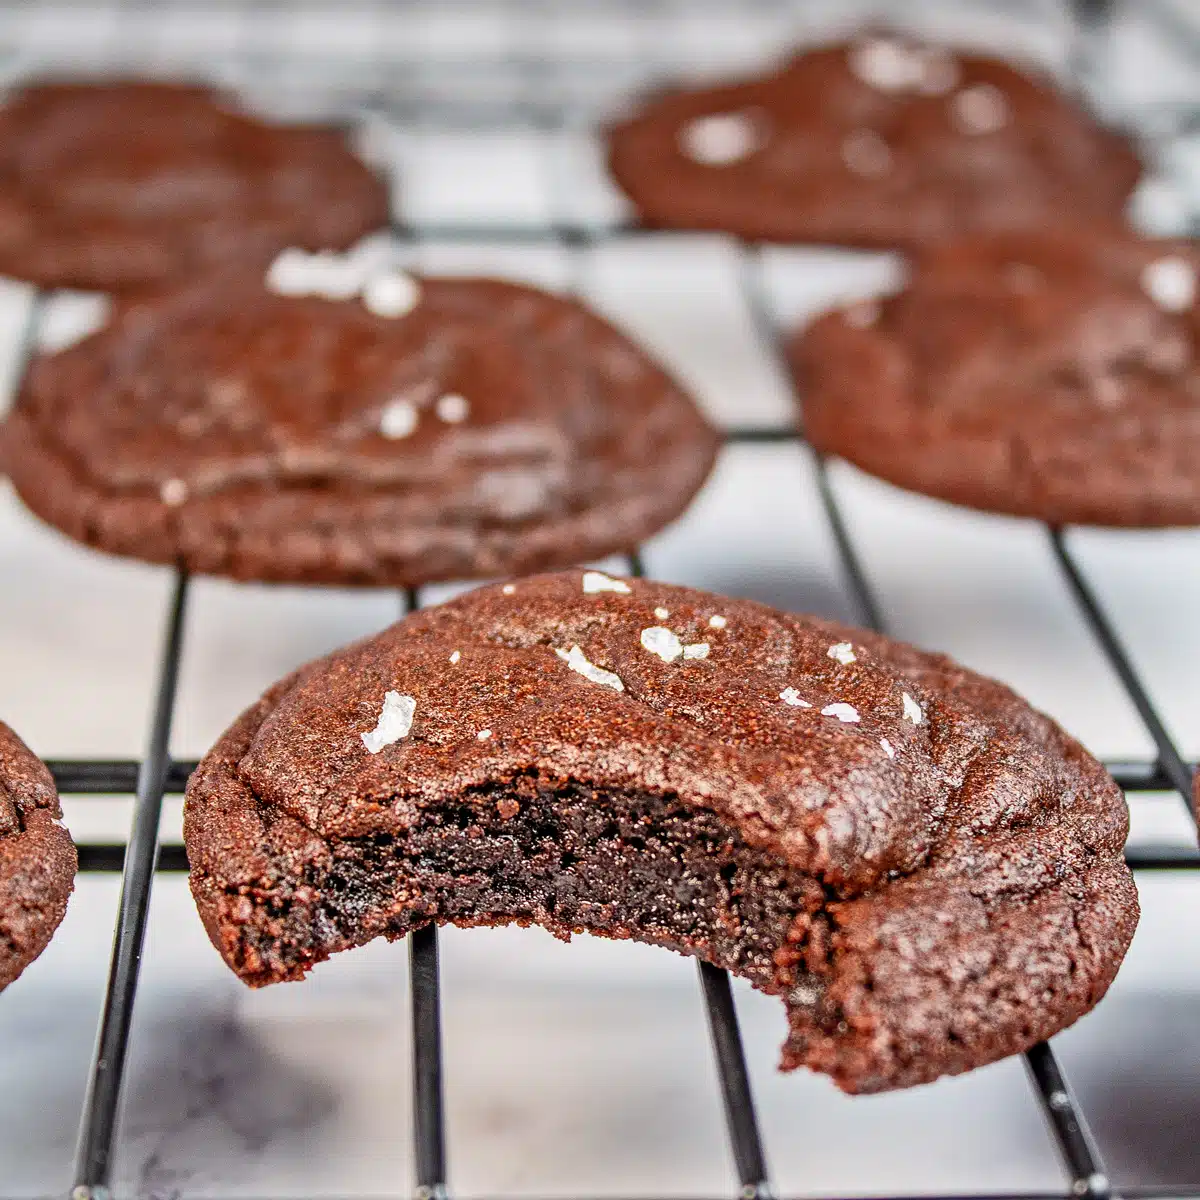 Çikolatalı kurabiye kare görüntüsü.